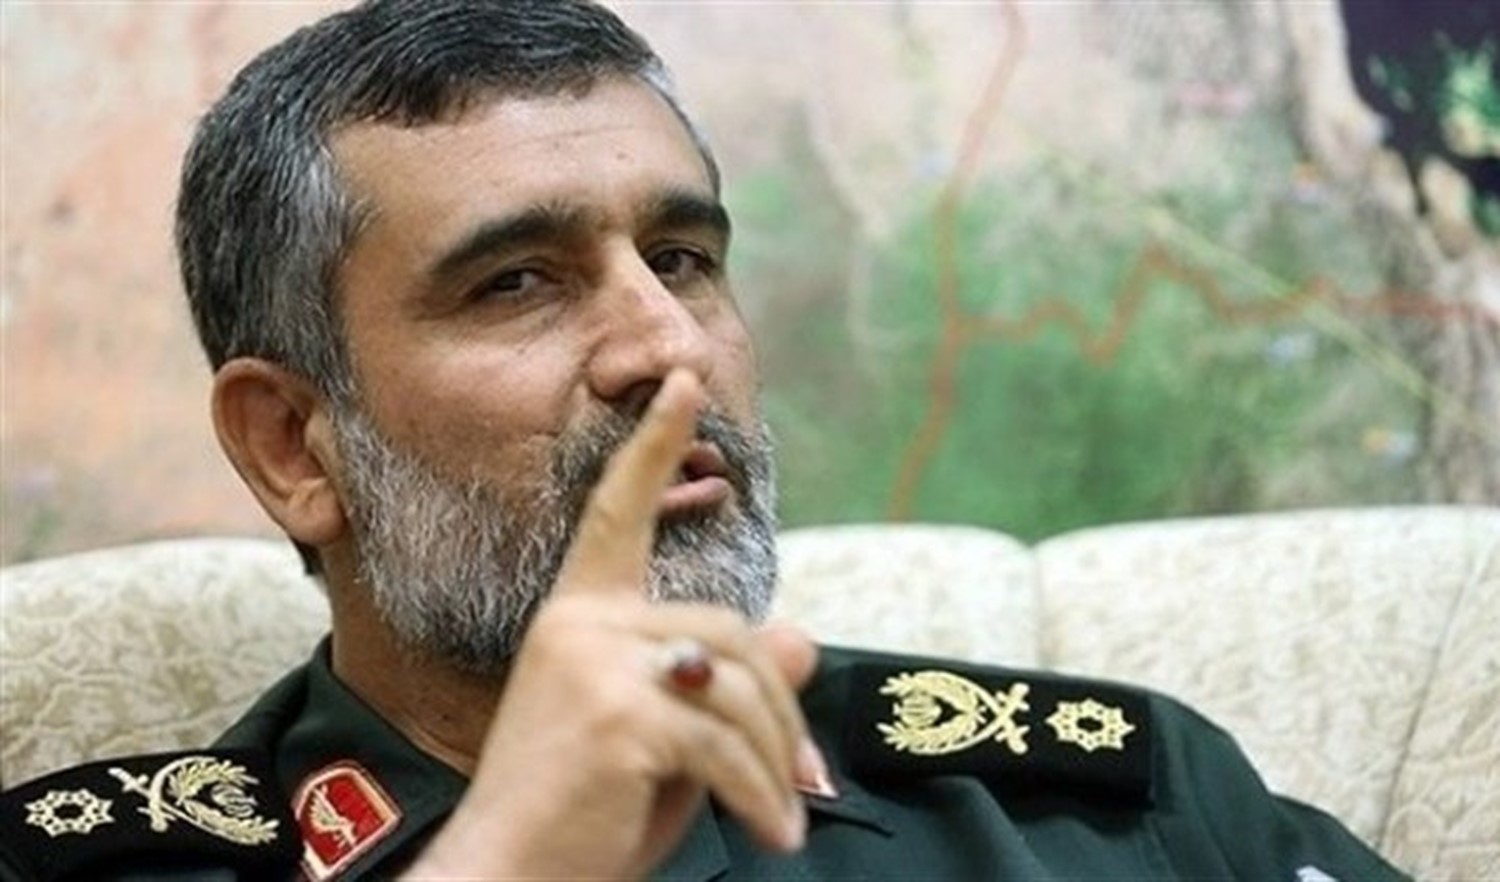 إيران تهدد الولايات المتحدة بضرب قواعدها في المنطقة